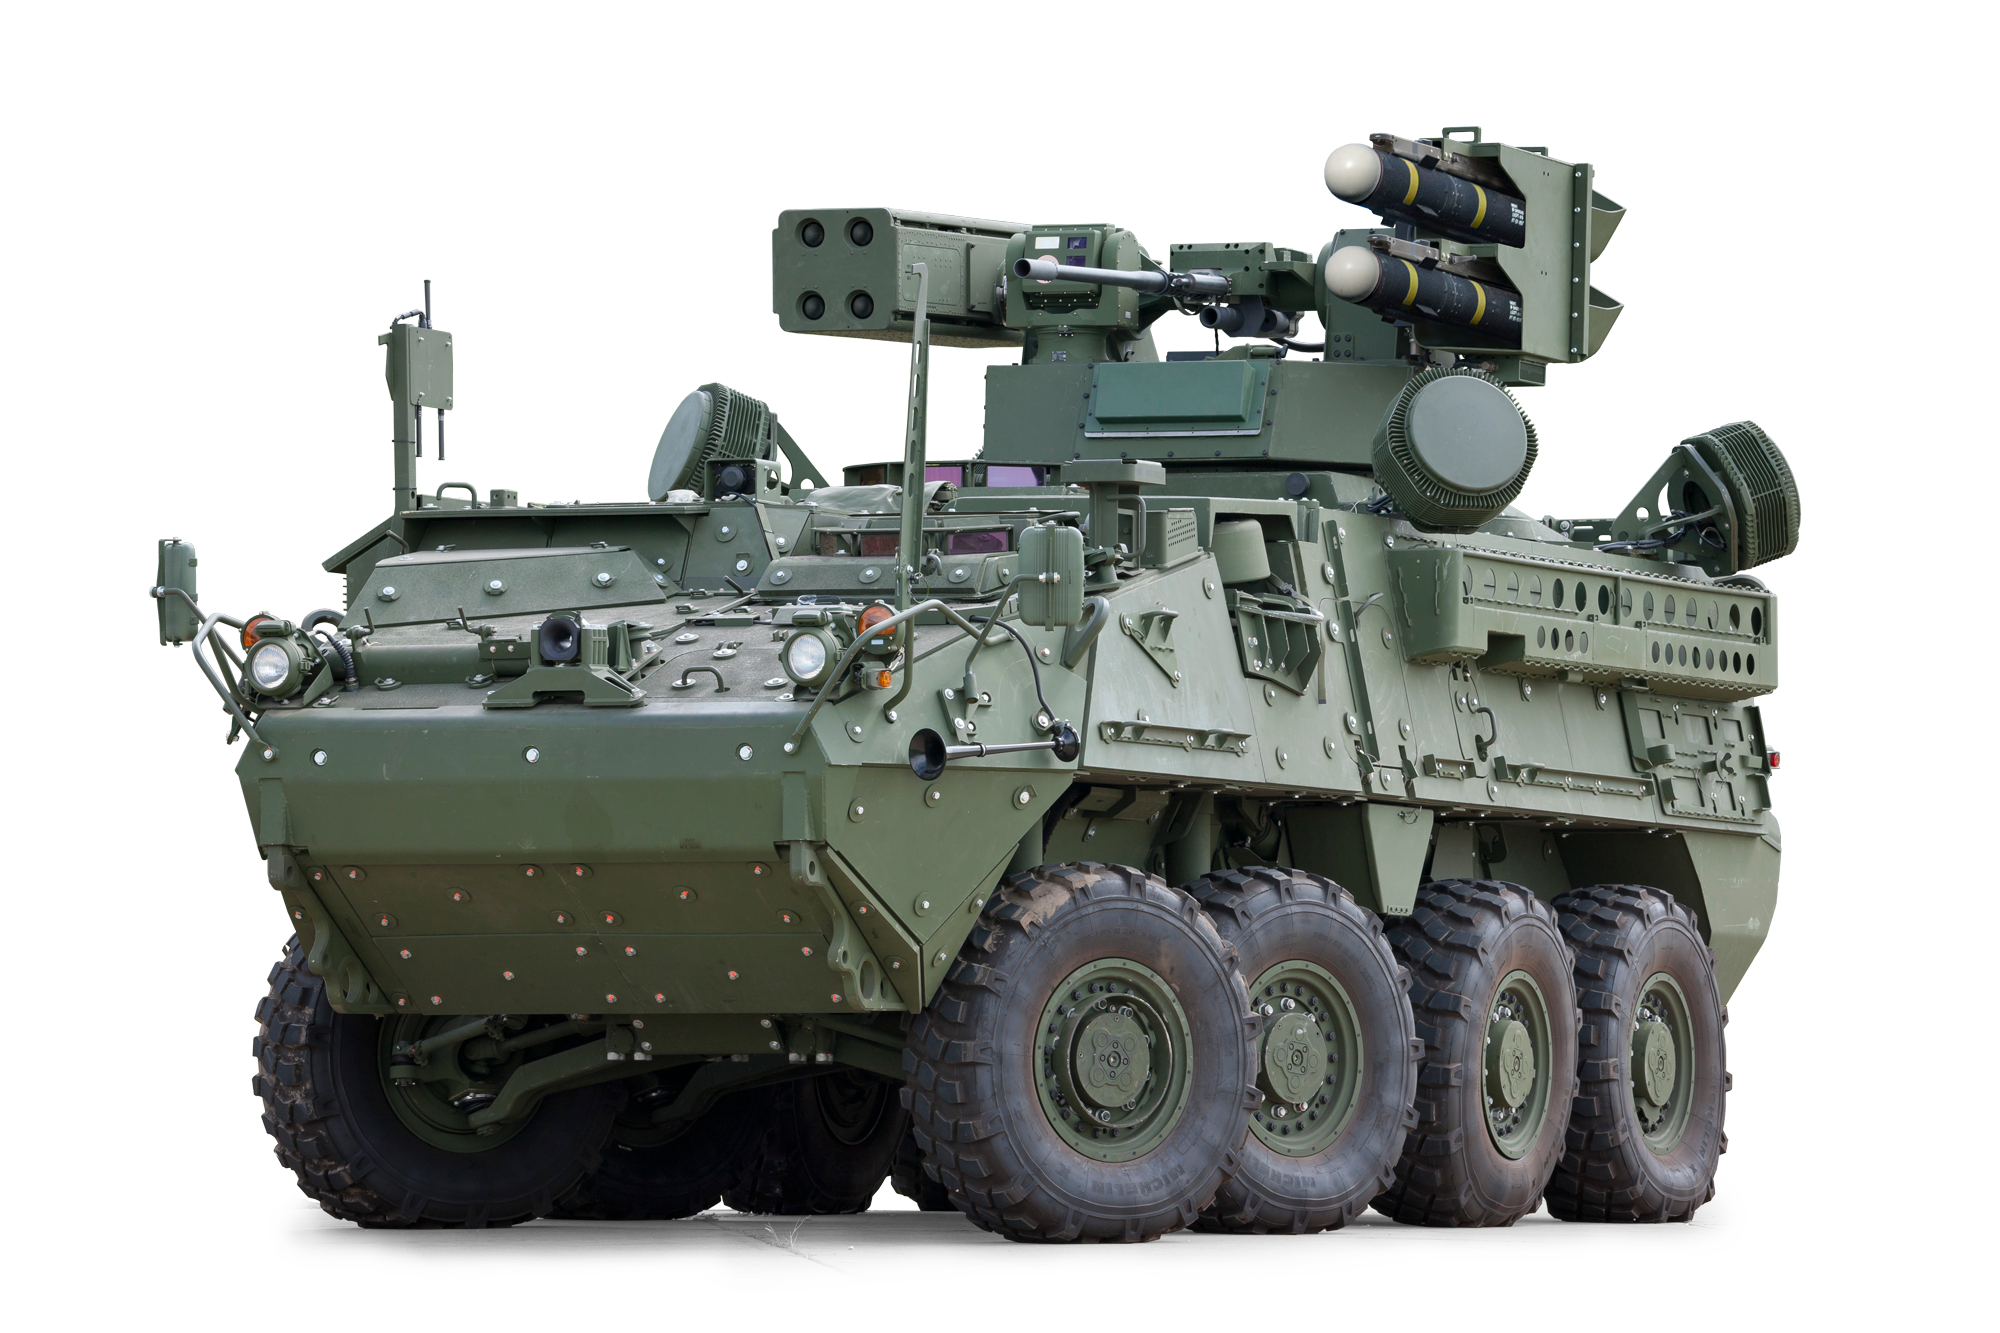 БТР Stryker a1. Страйкер SHORAD. БТР m1126/m1135 Страйкер. M1135 Stryker.